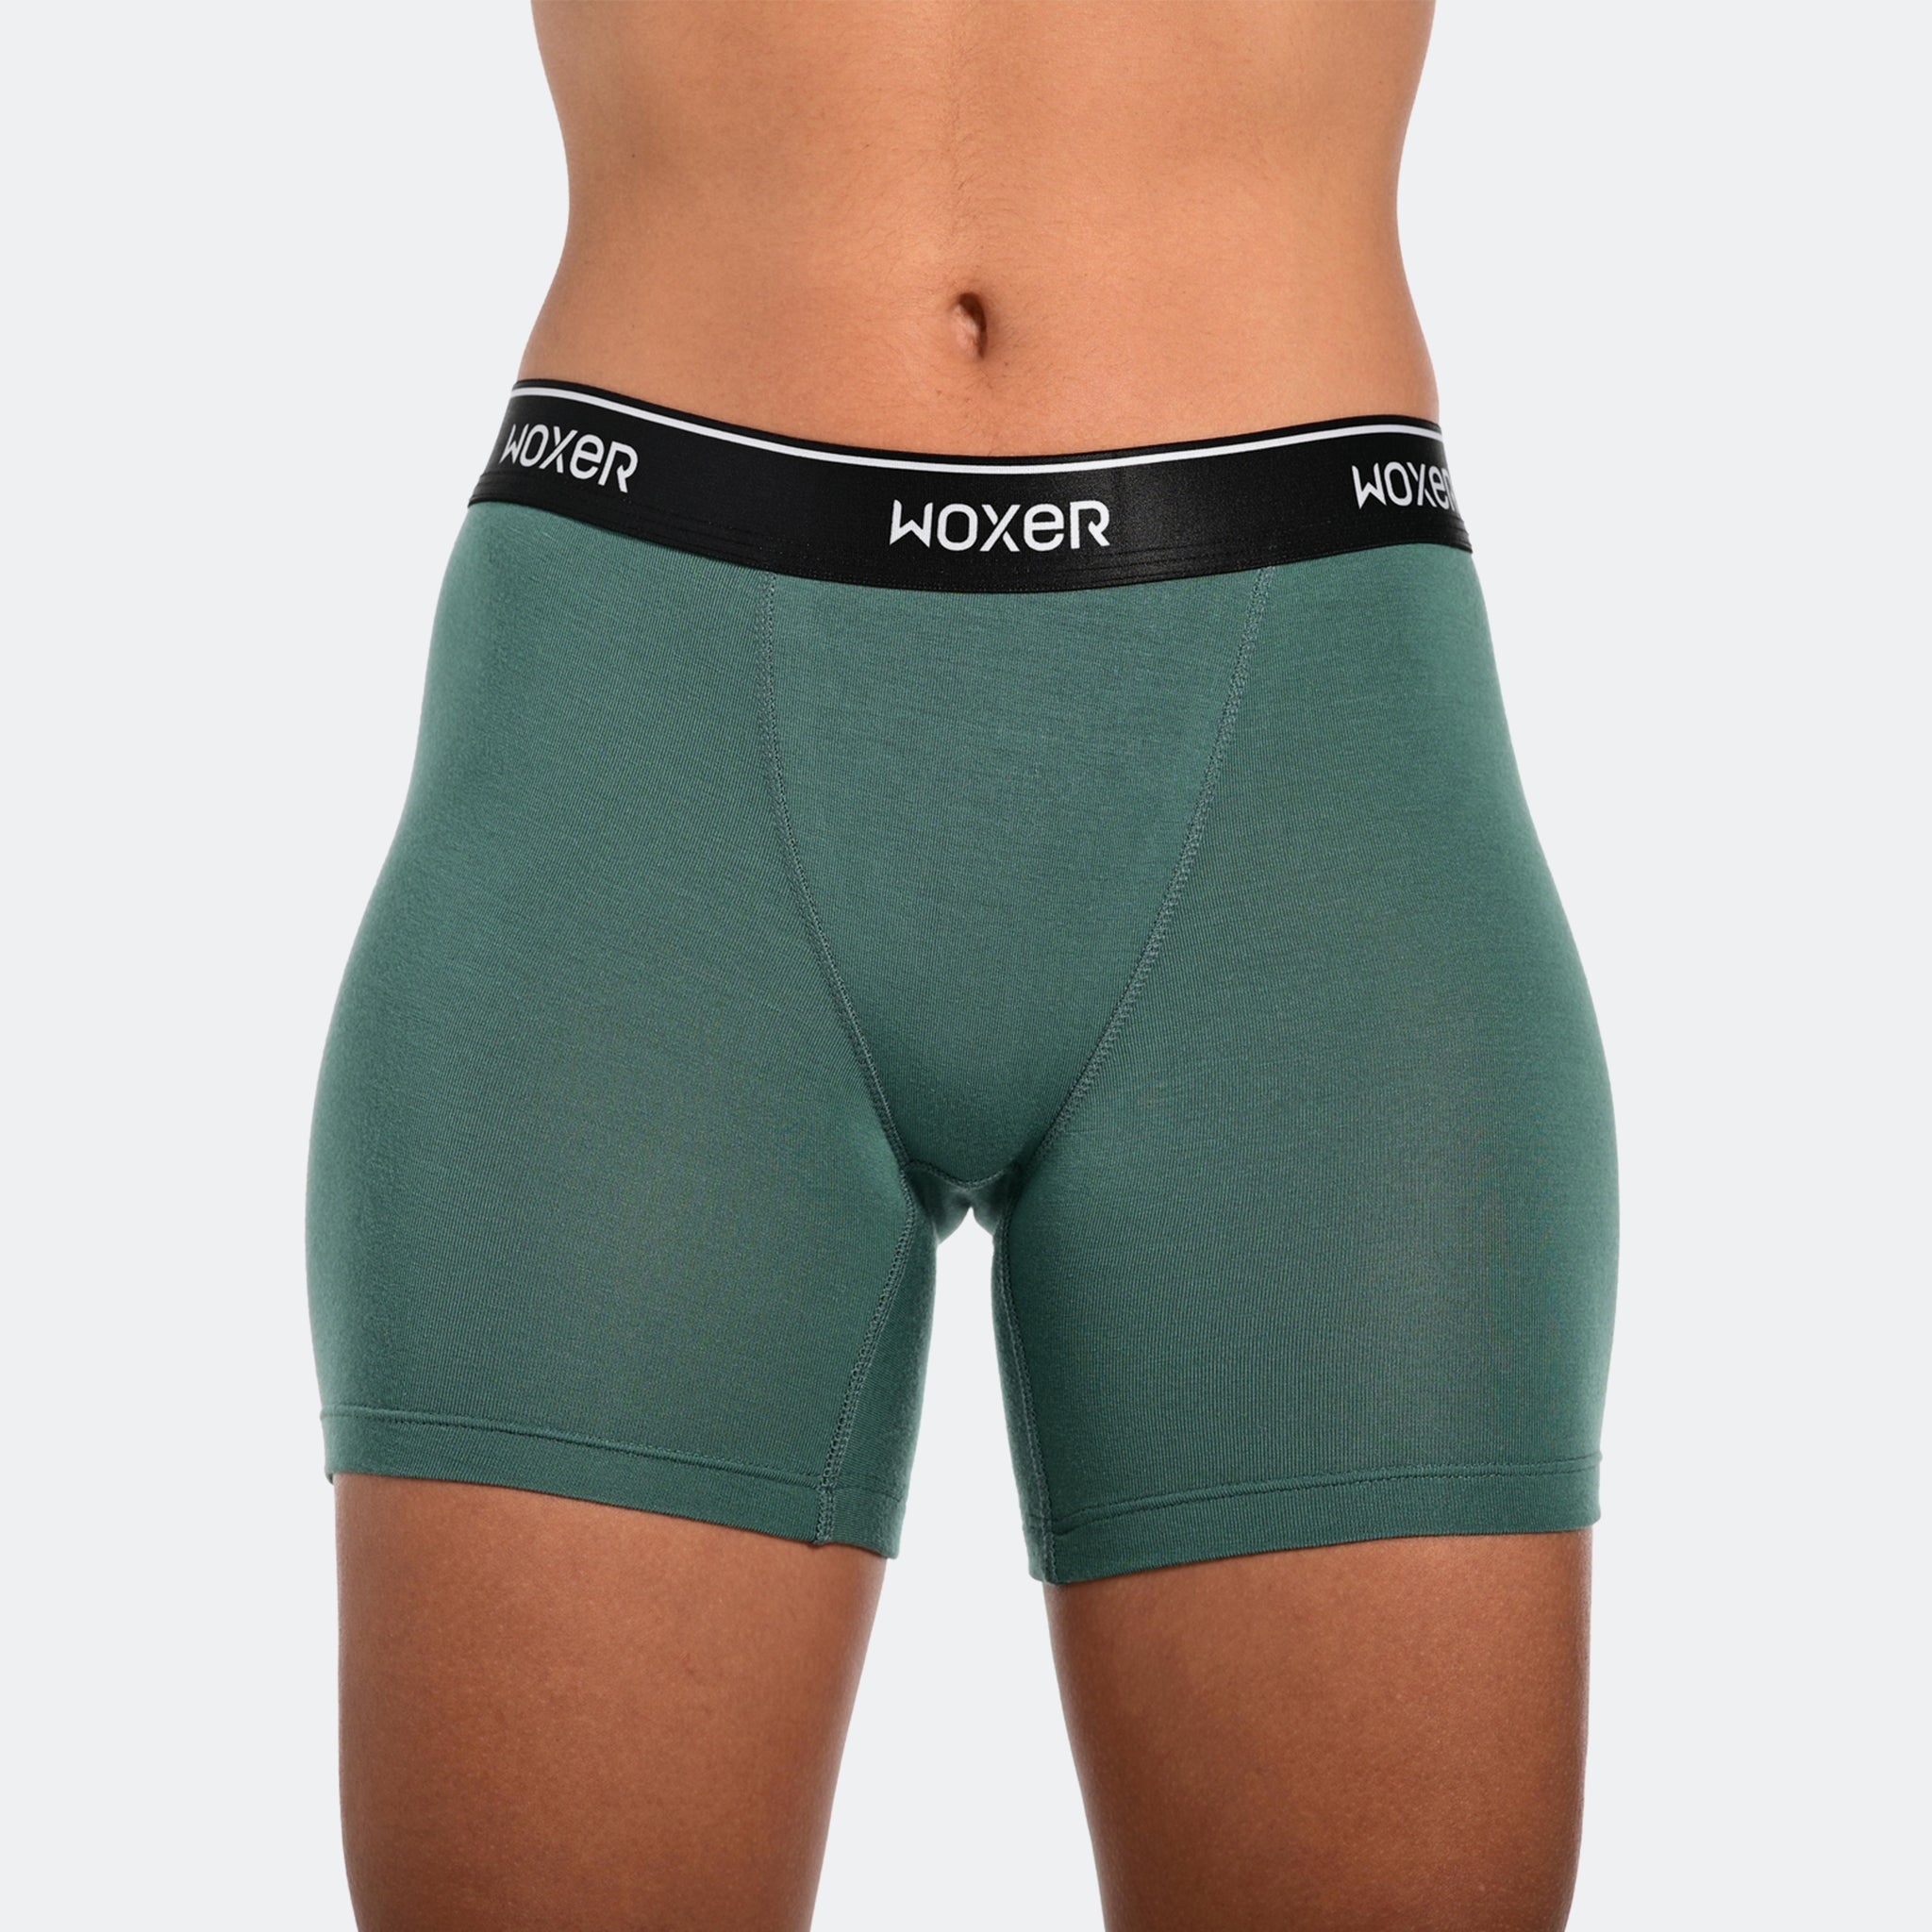 Woxer Boxer Briefs for Women Baller 5” Inseam- Underwear for Ladies